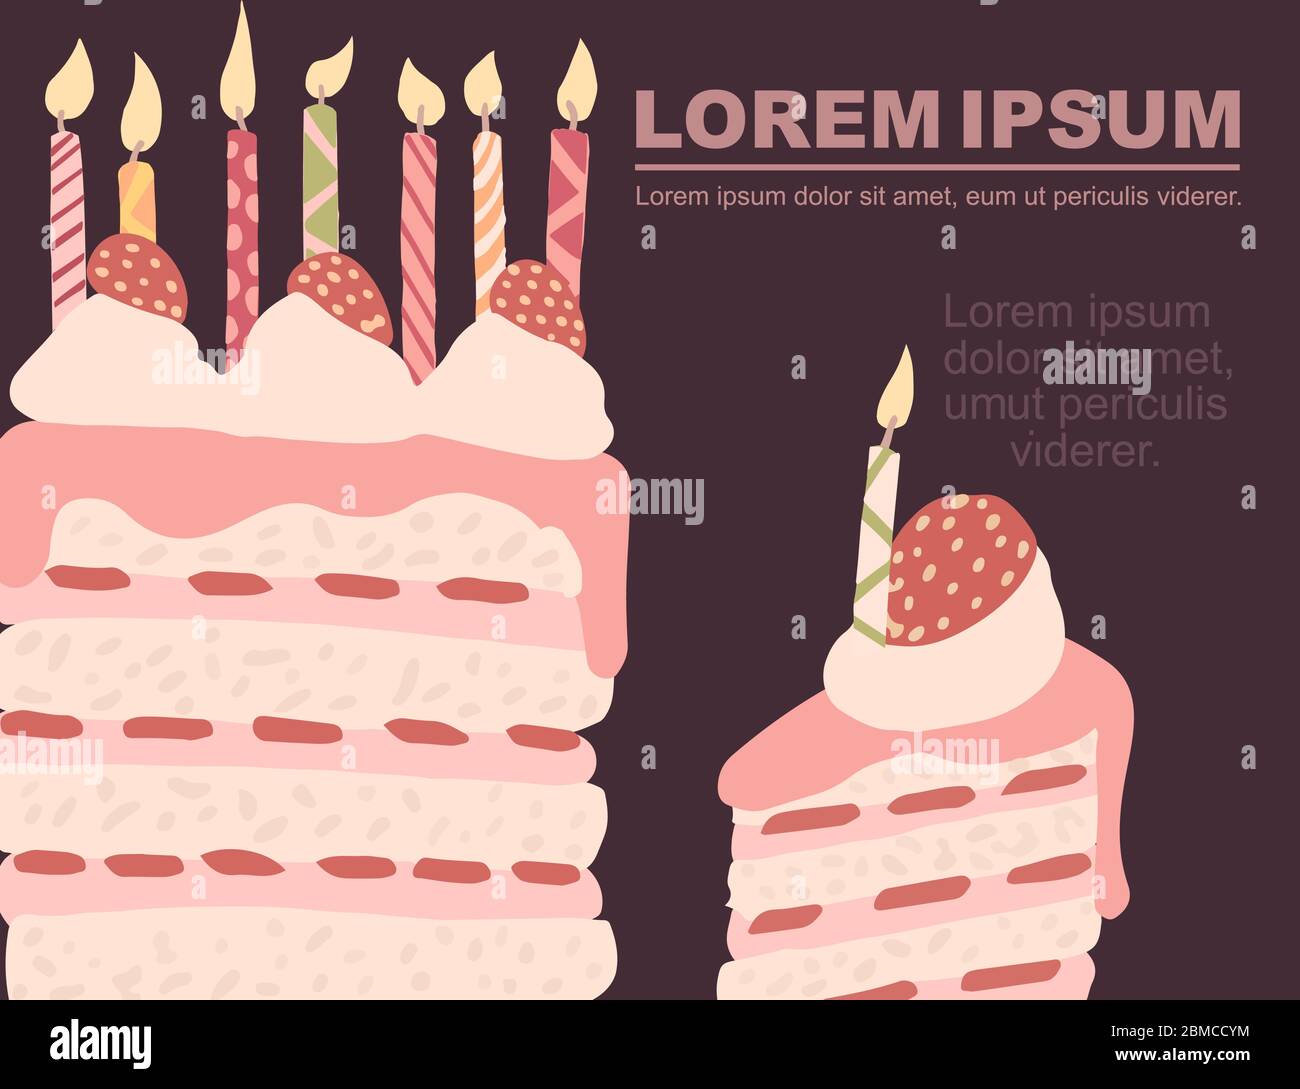 Publicité flyer design morceau de gâteau avec fraise et bougies d'anniversaire illustration vectorielle plate sur fond marron Illustration de Vecteur